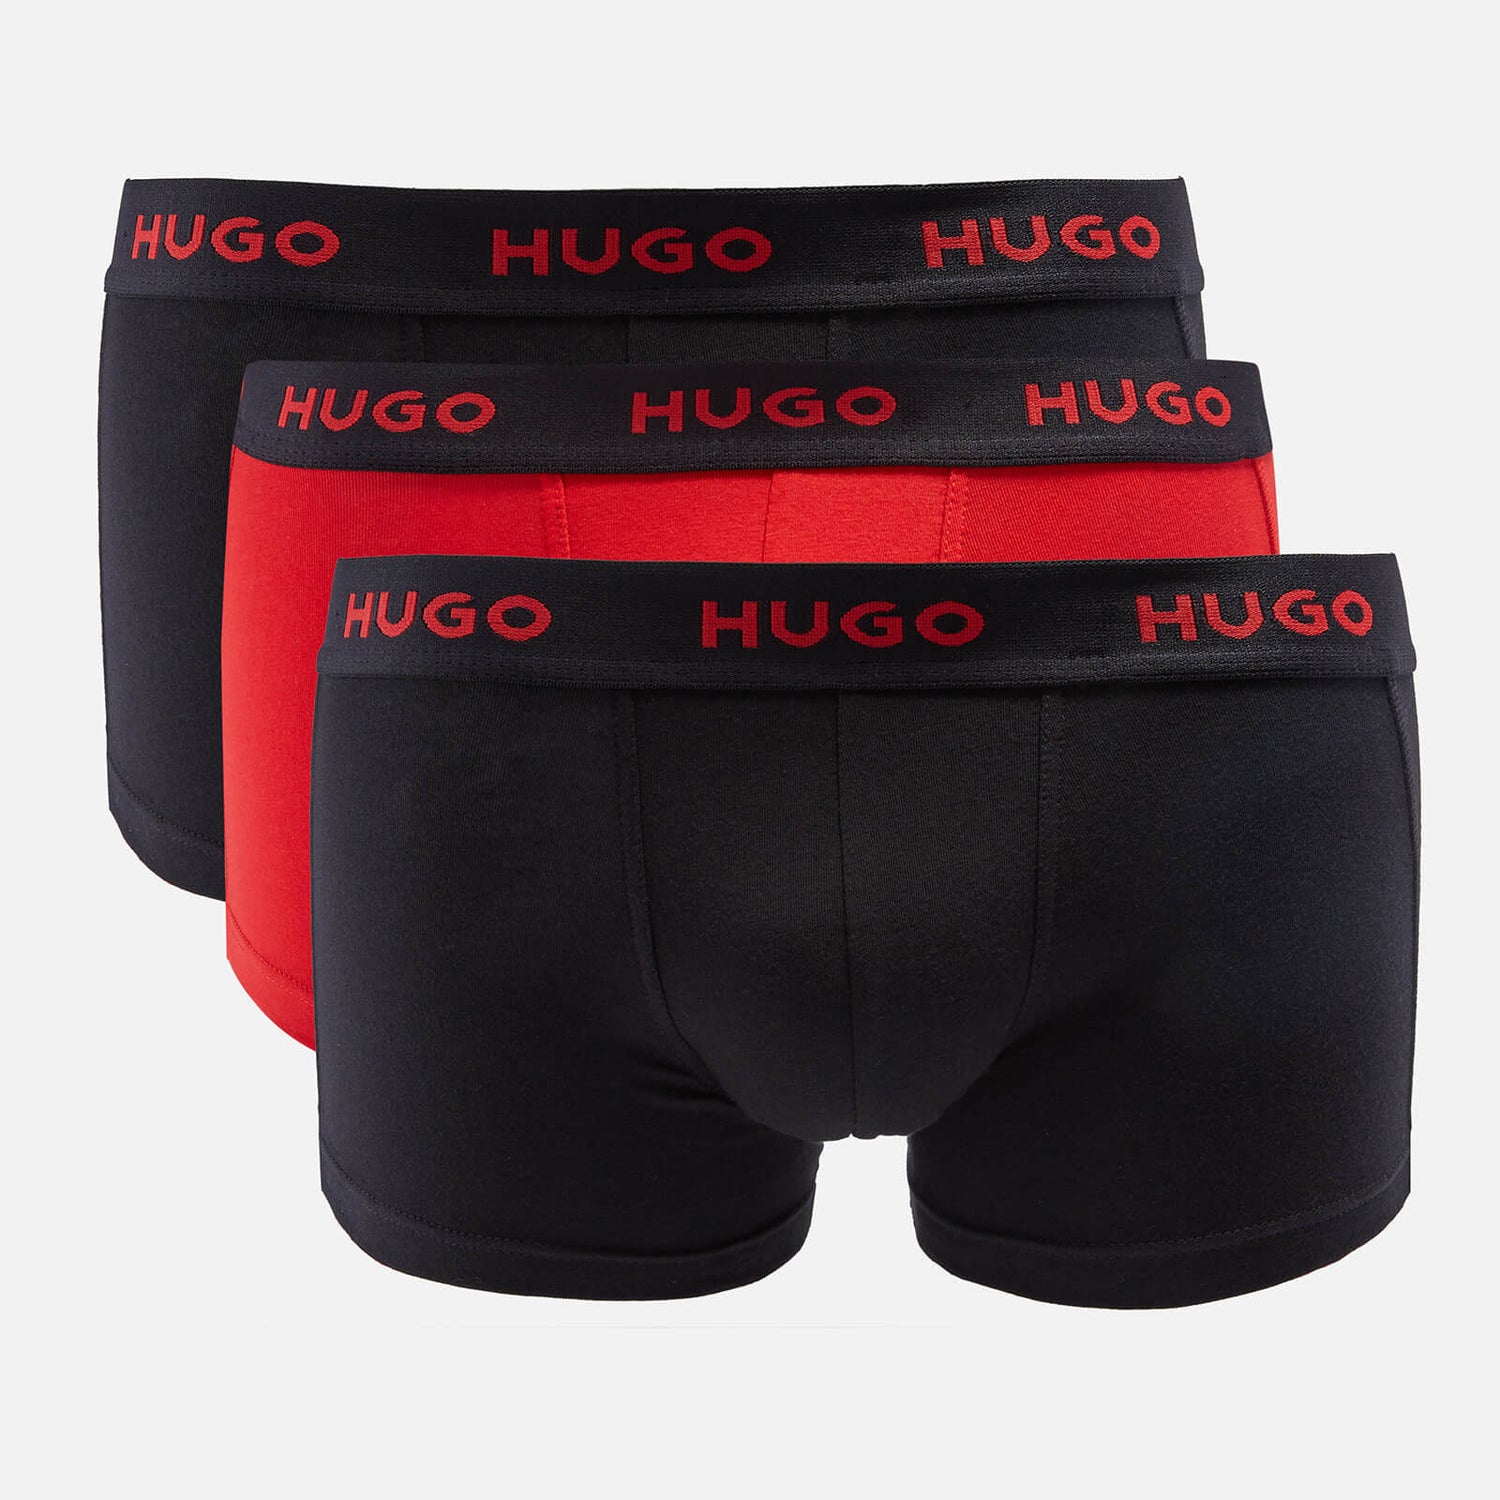 HUGO Bodywear Men's 3-Pack Trunks - Black/Red | TheHut.com